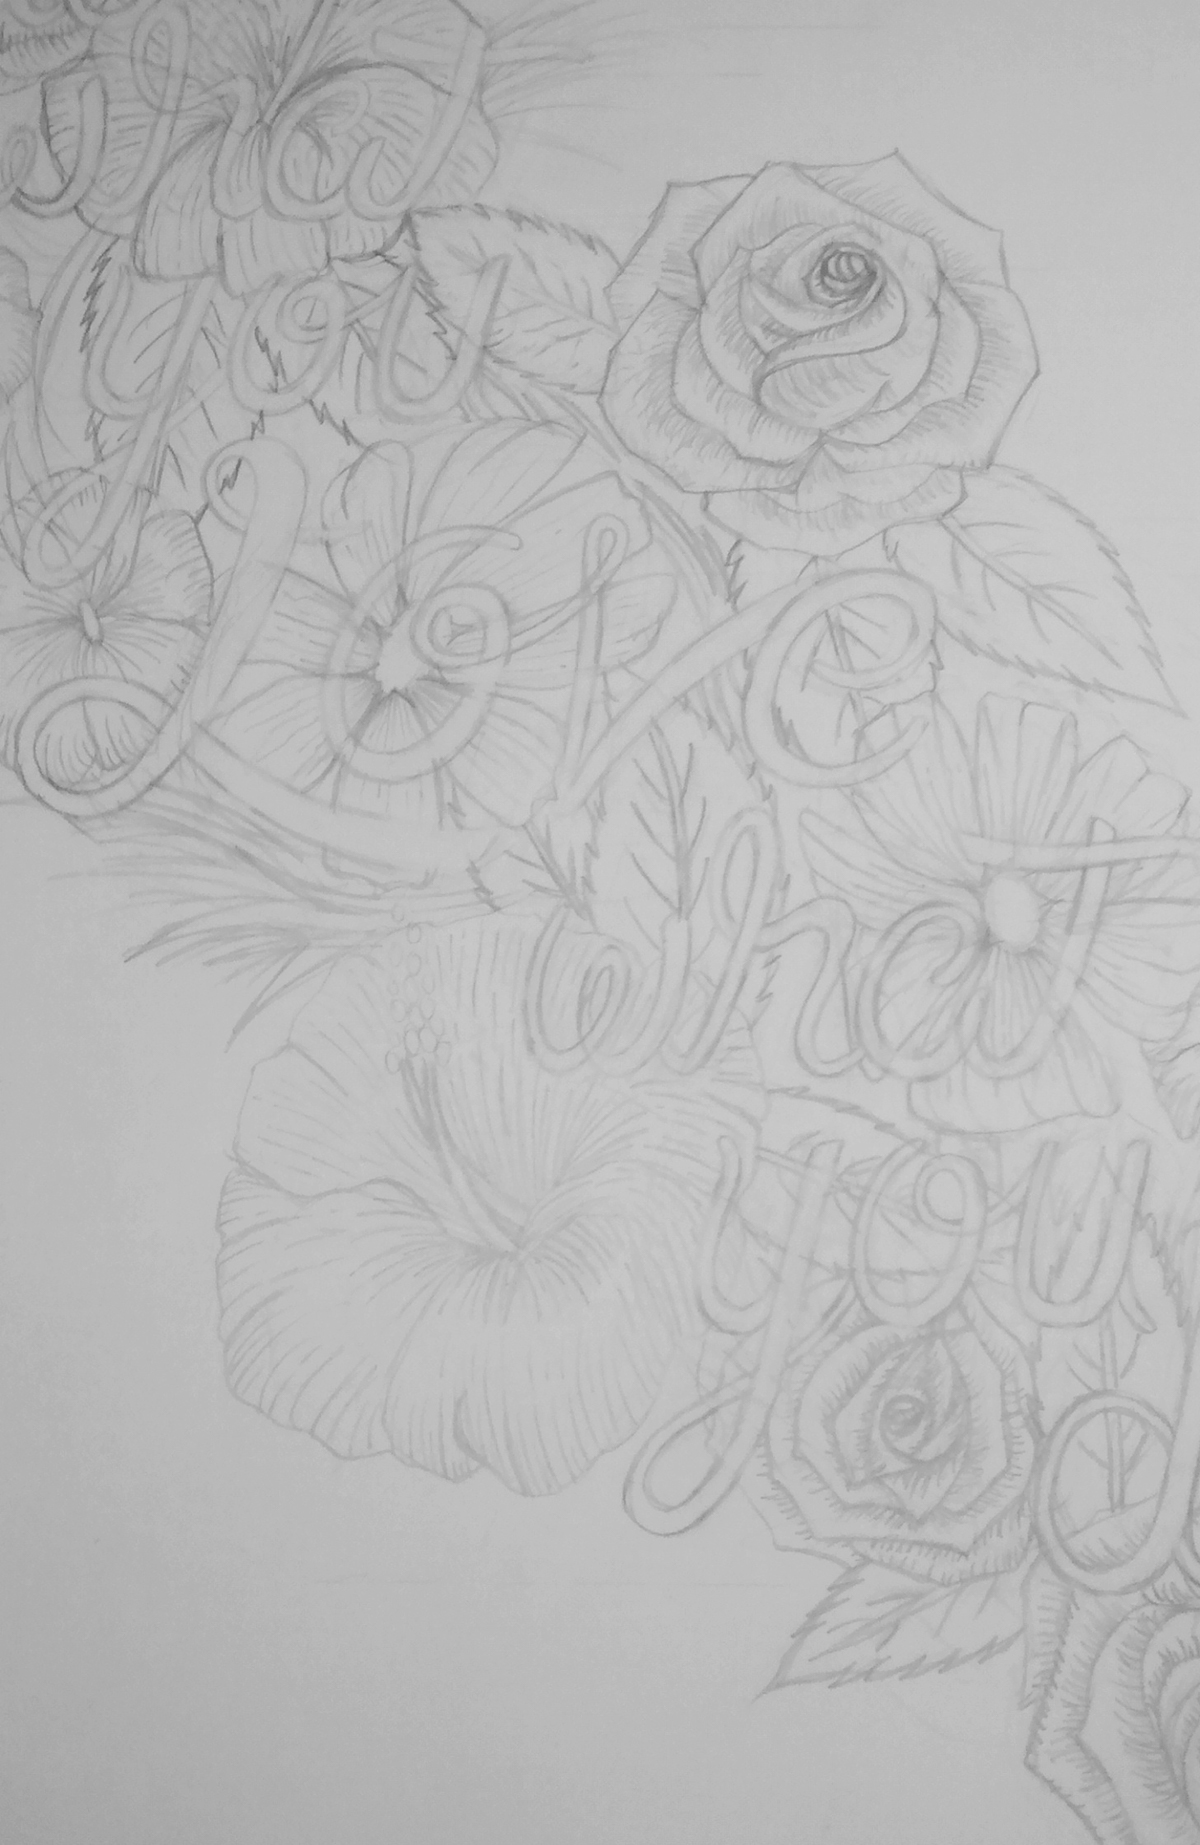 lettering tipografia letras flower Flores Ornamentaciones Love composición diseño diseñografico cuadro poster black White